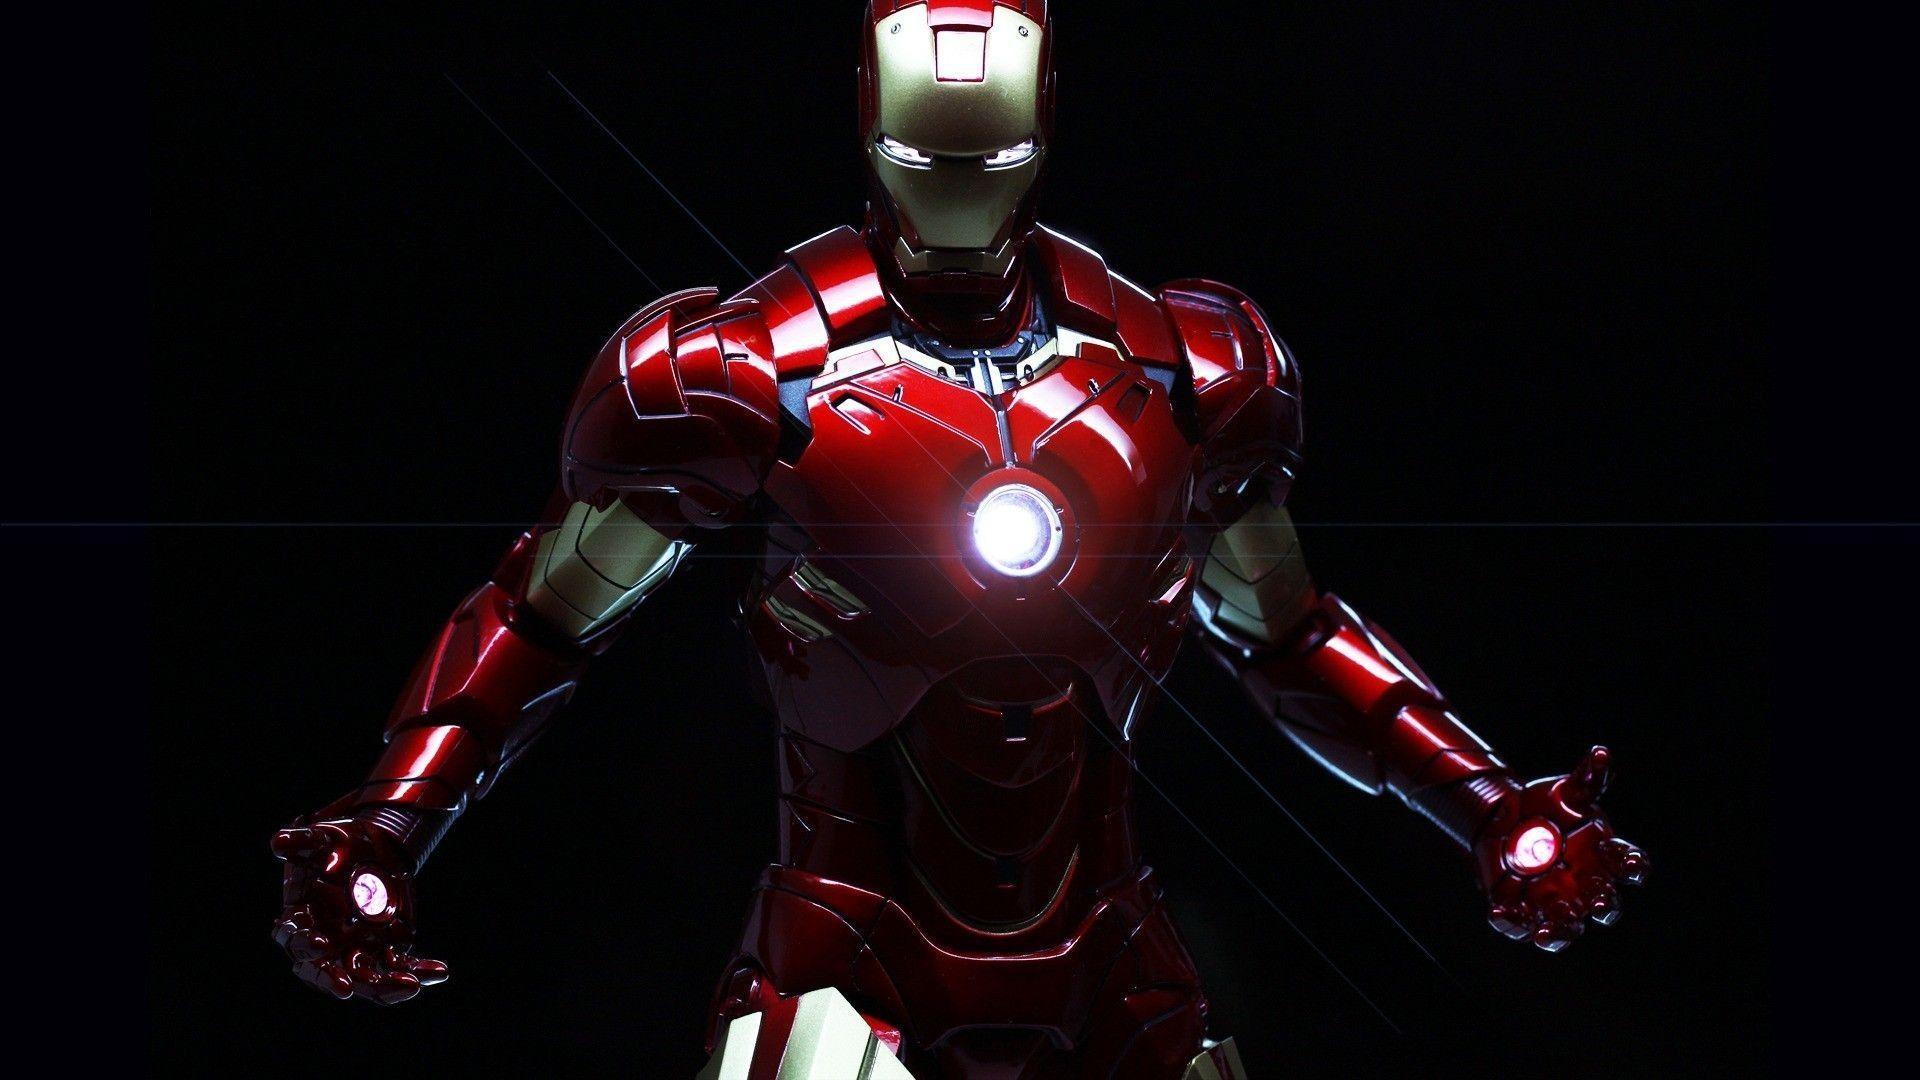 Iron Man Armor Wallpaper Free Iron Man Armor Background